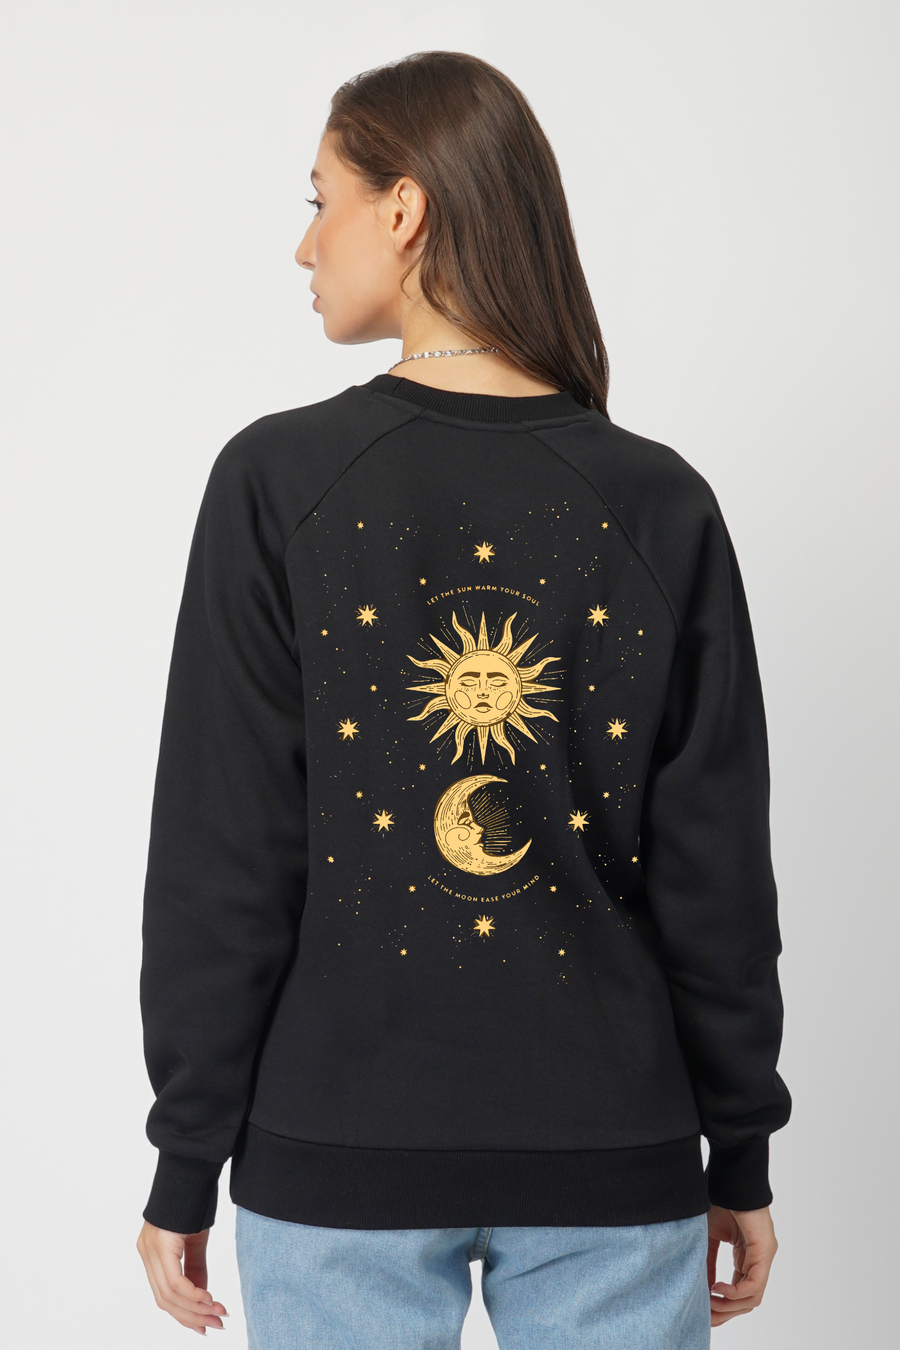 Just Cosmic- Sweatshirt